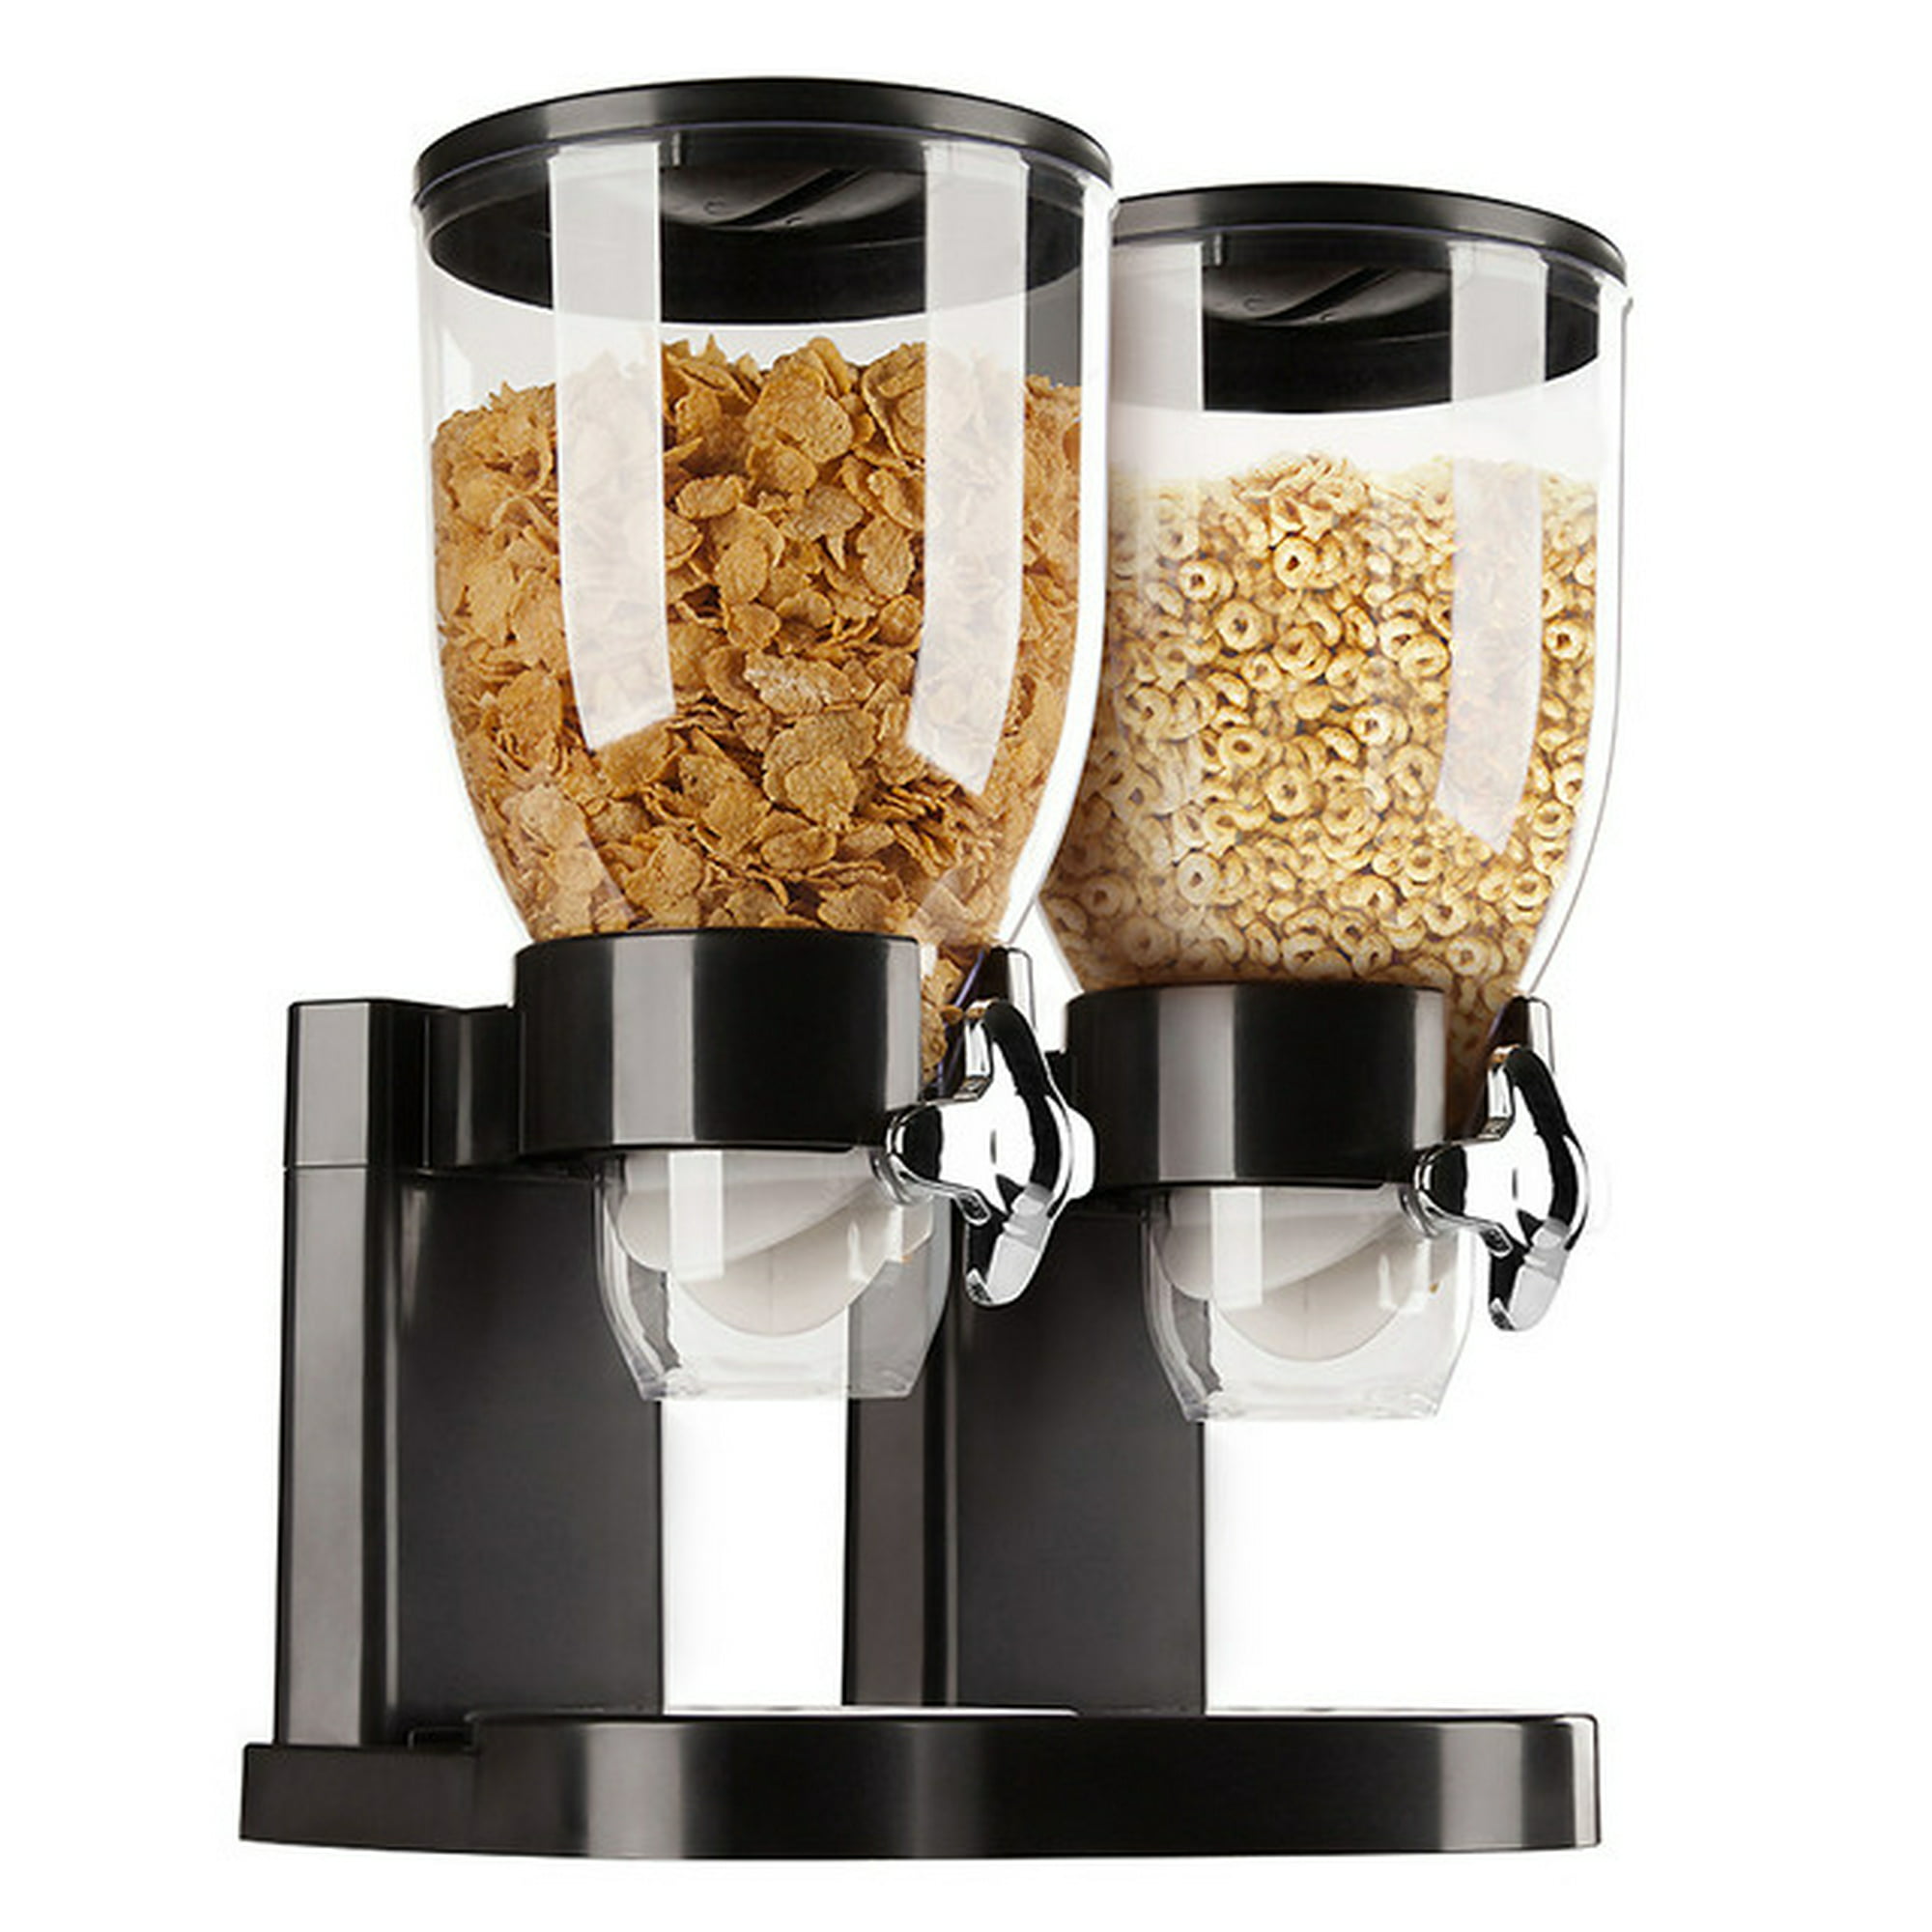 Dispensador doble de cereales con cuba de 10 litros